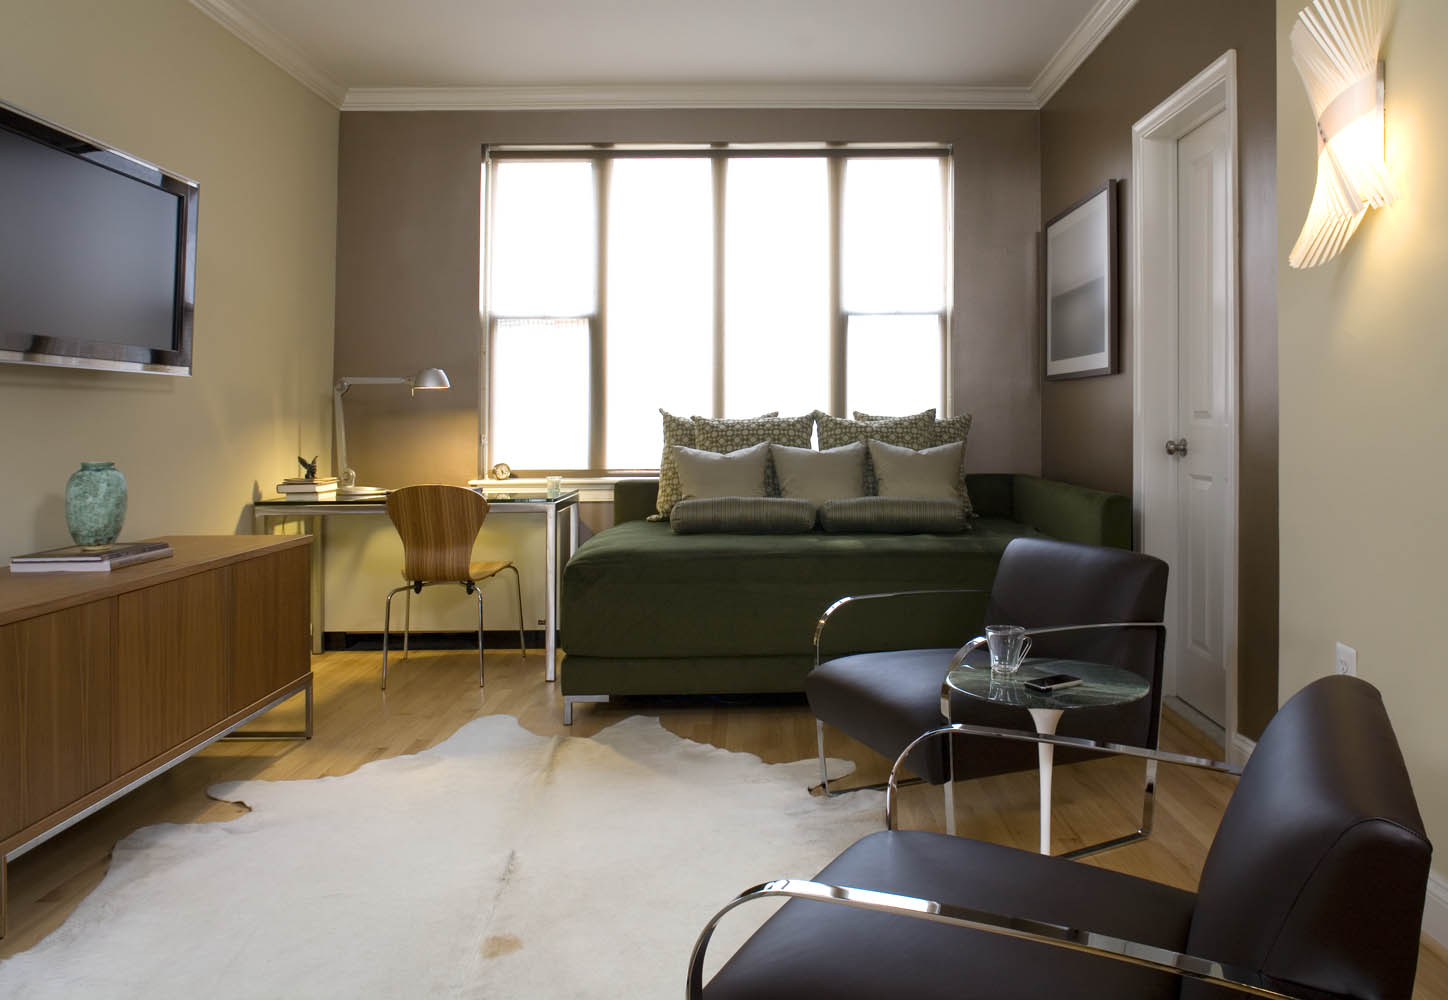 Идеи для однокомнатной квартиры в стиле минимализм